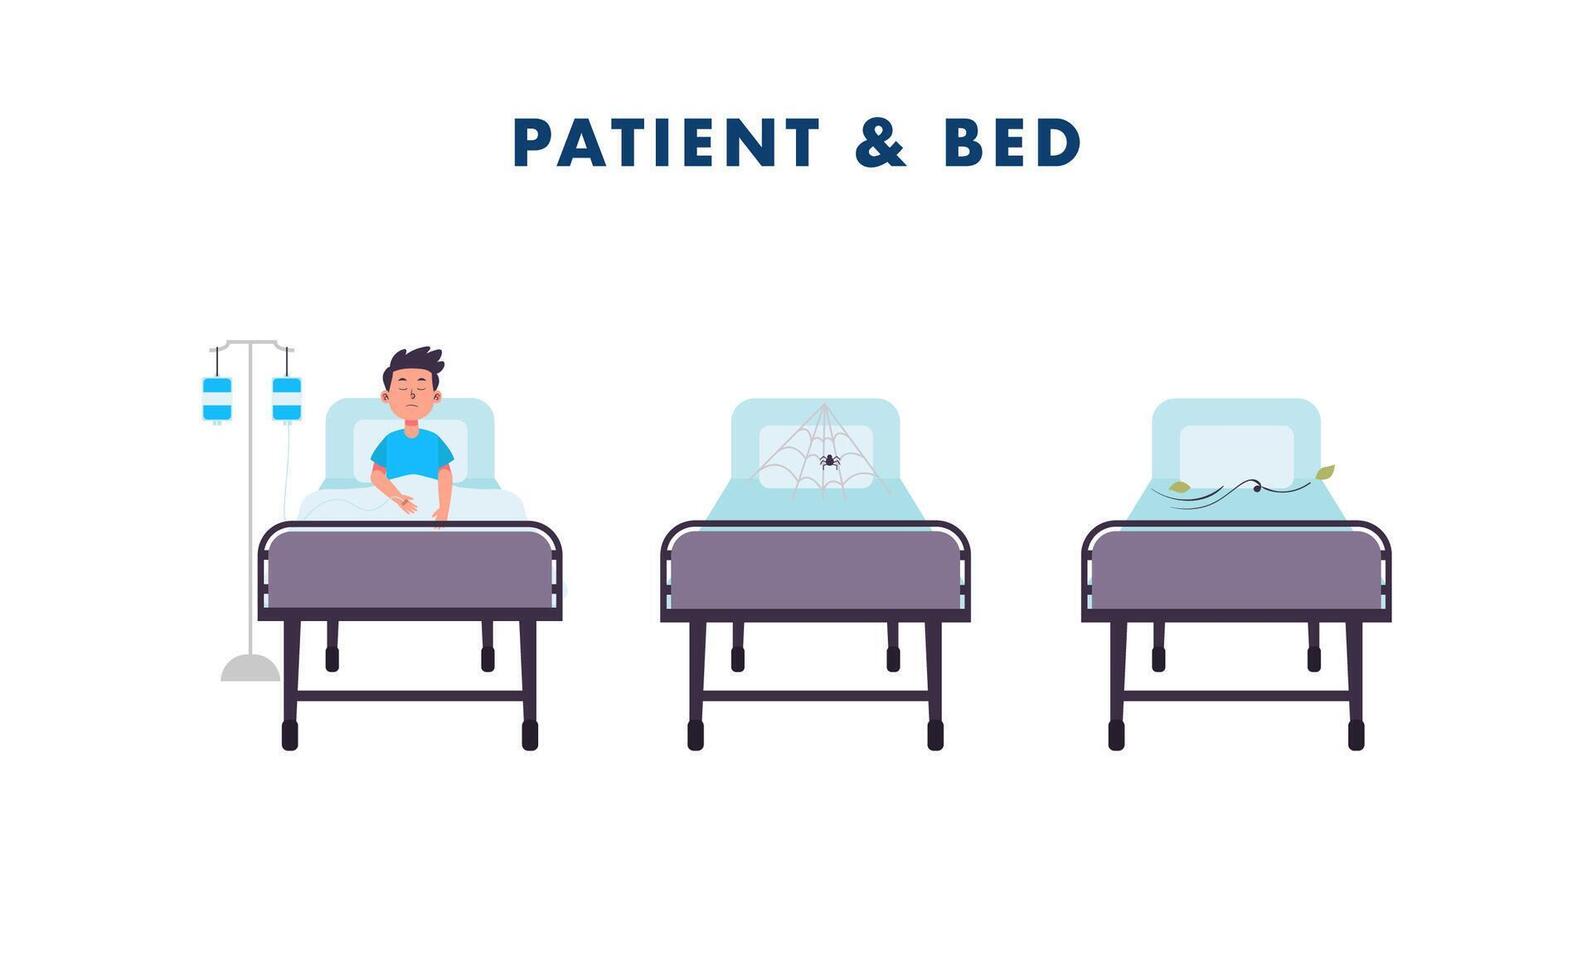 patient om på säng vilar och tömma patient på säng på sjukhus eller klinik illustration uppsättning vektor